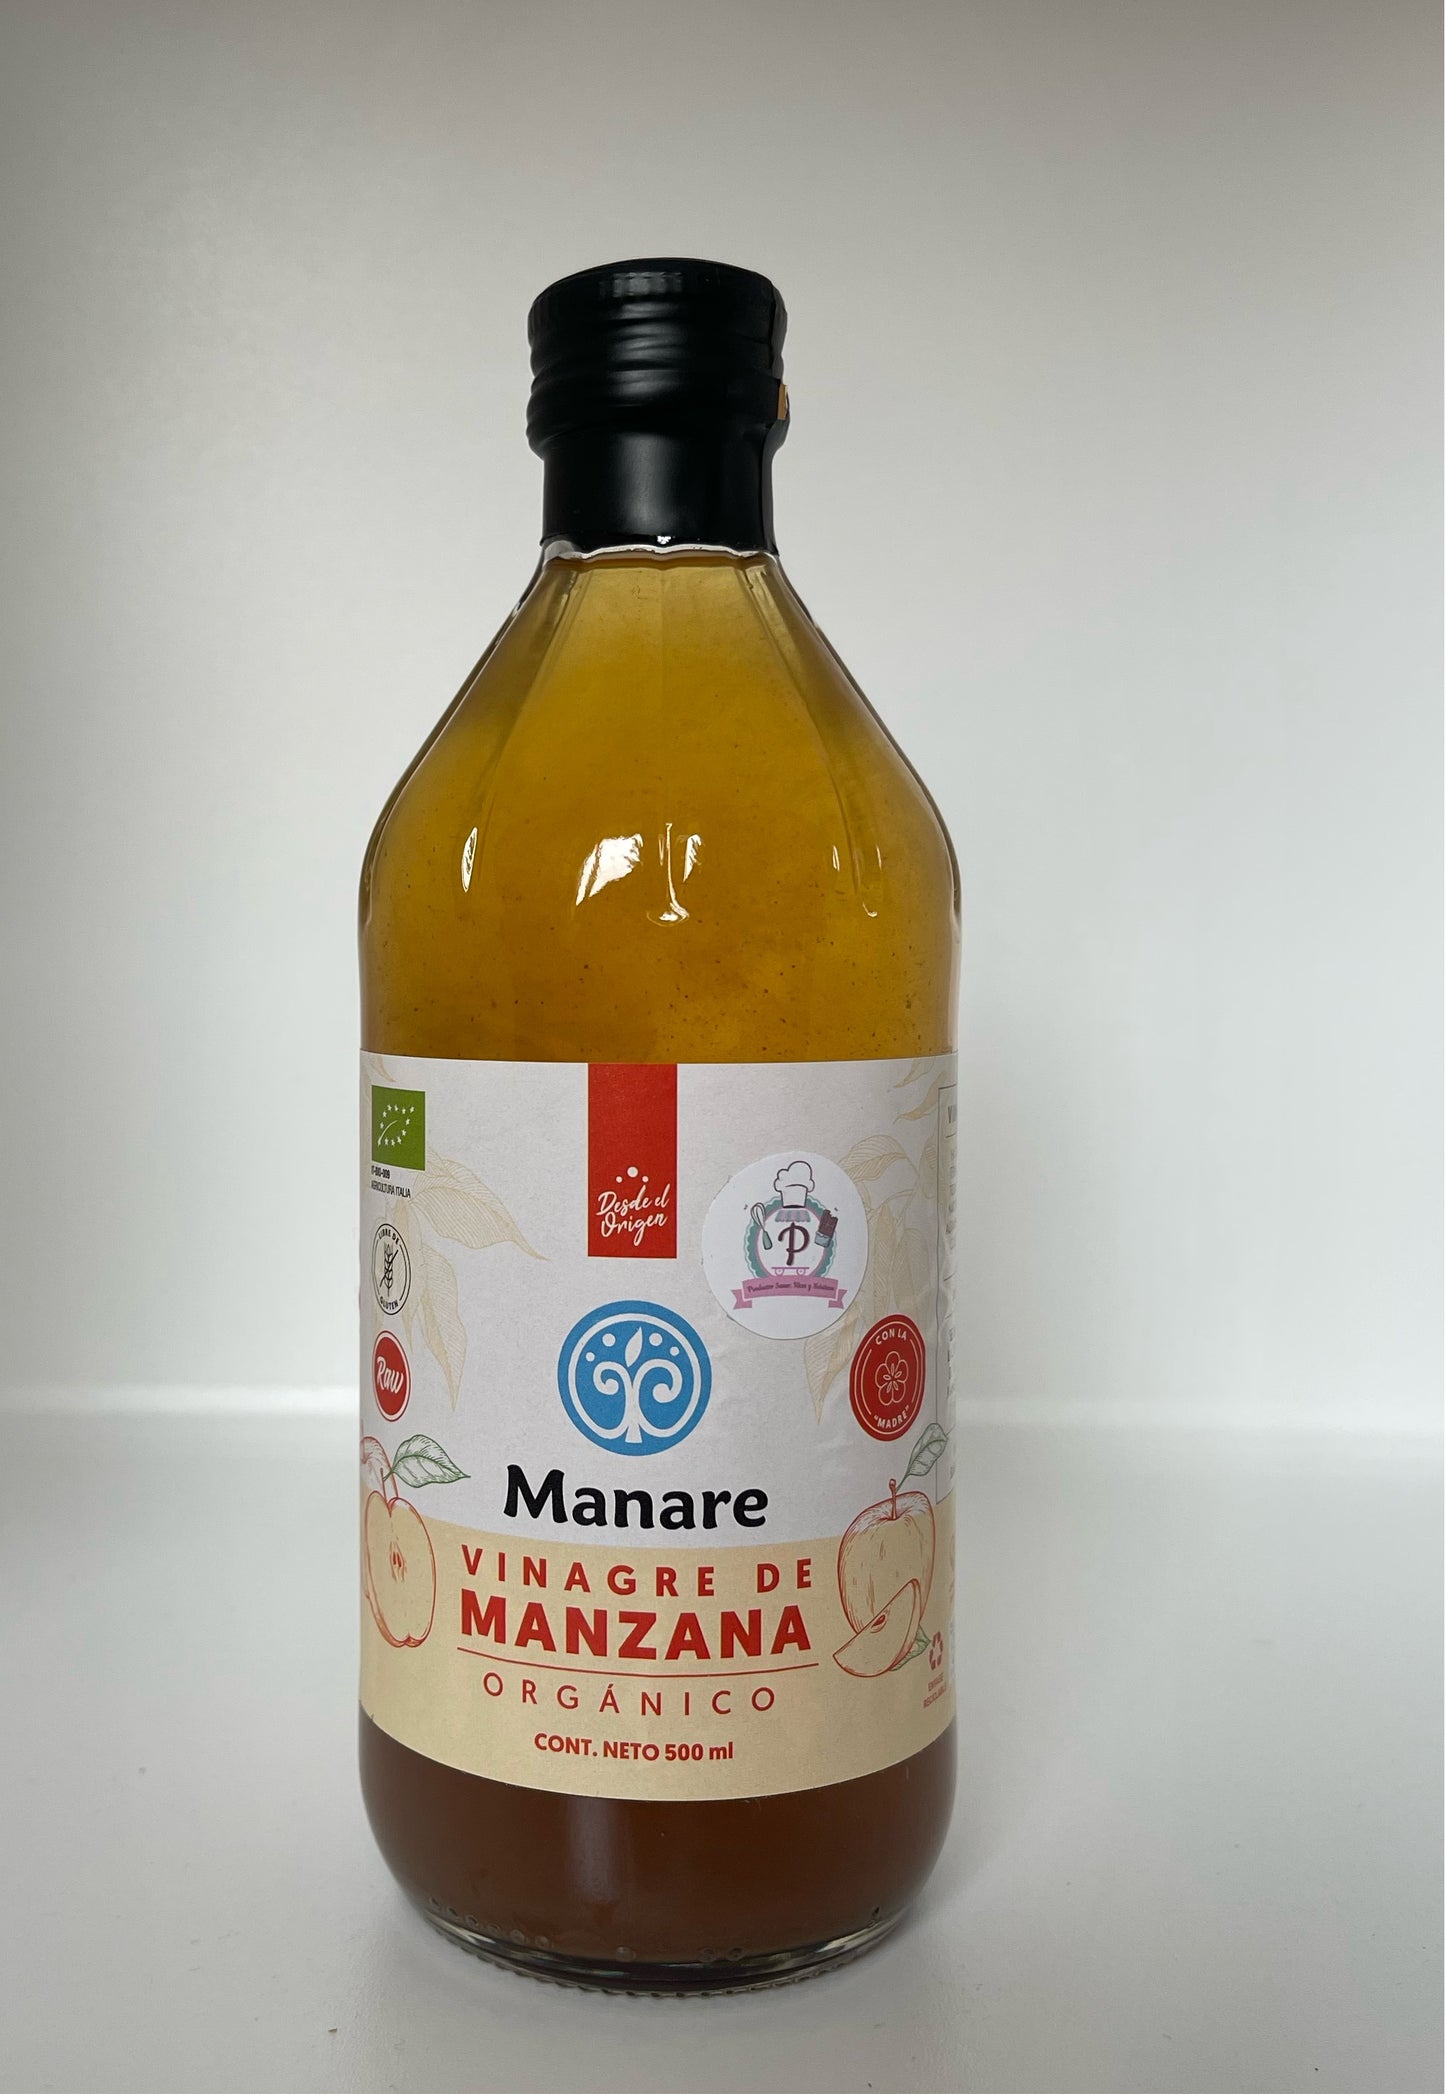 Vinagre de manzana orgánico "Manare" -